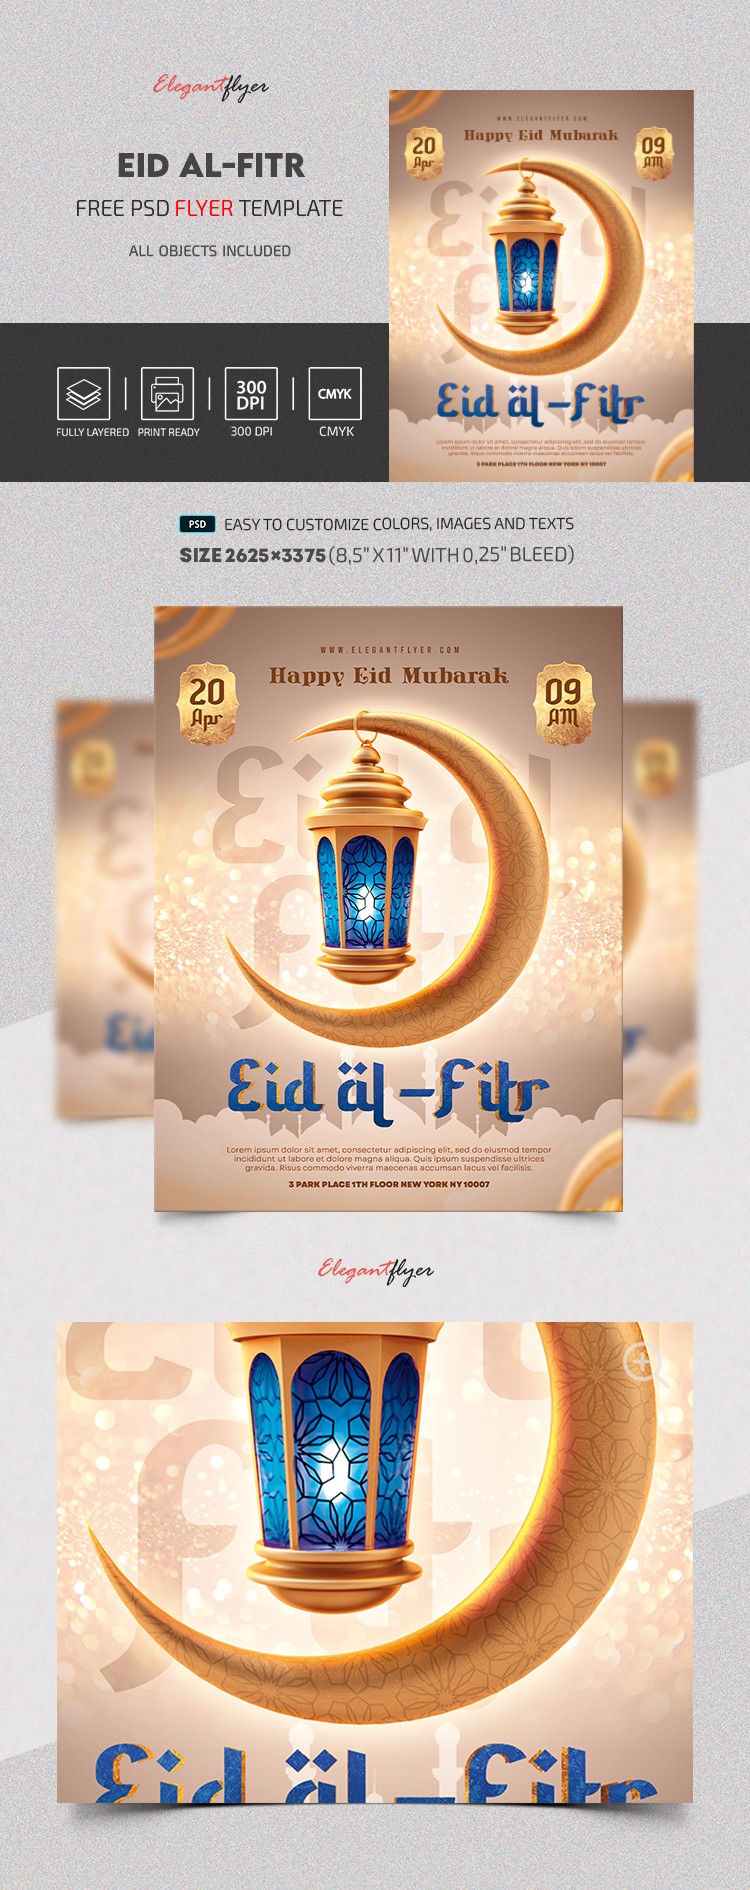 Eid Al-Fitr - Free Flyer PSD Template by ElegantFlyer